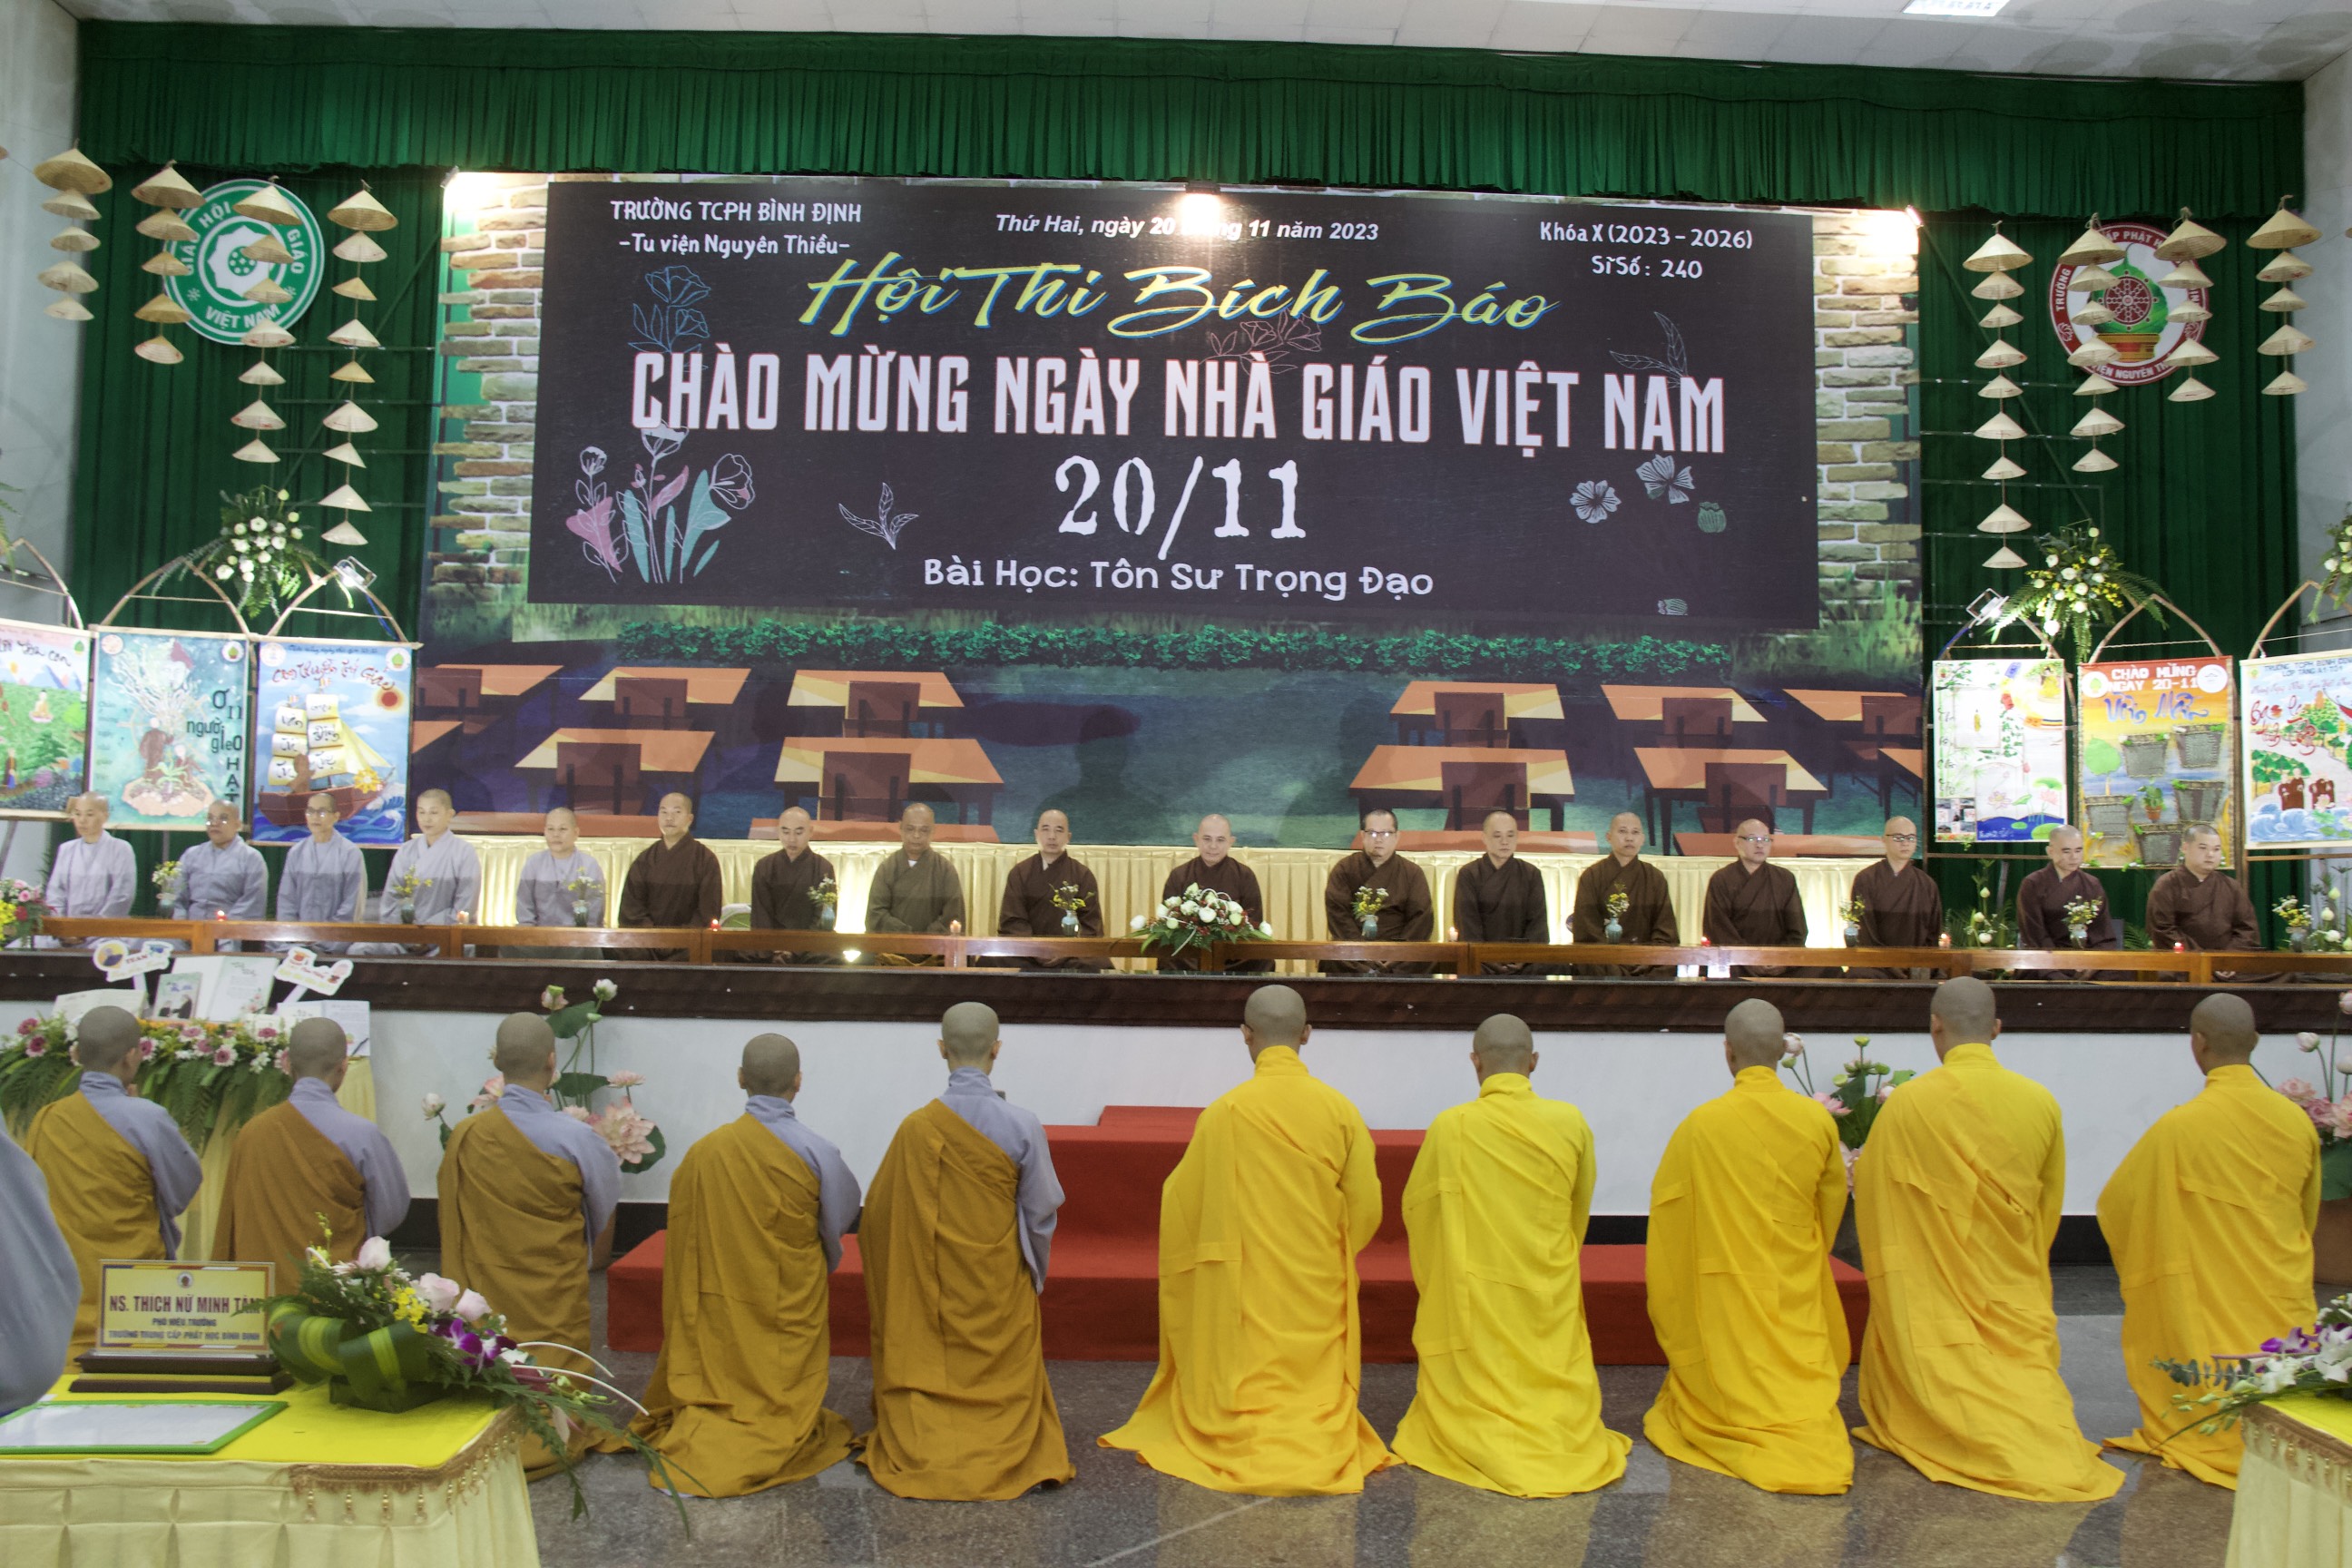 Trường Trung cấp Phật học Bình Định tổ chức Hội Thi Bích Báo chào mừng ngày Nhà giáo Việt Nam